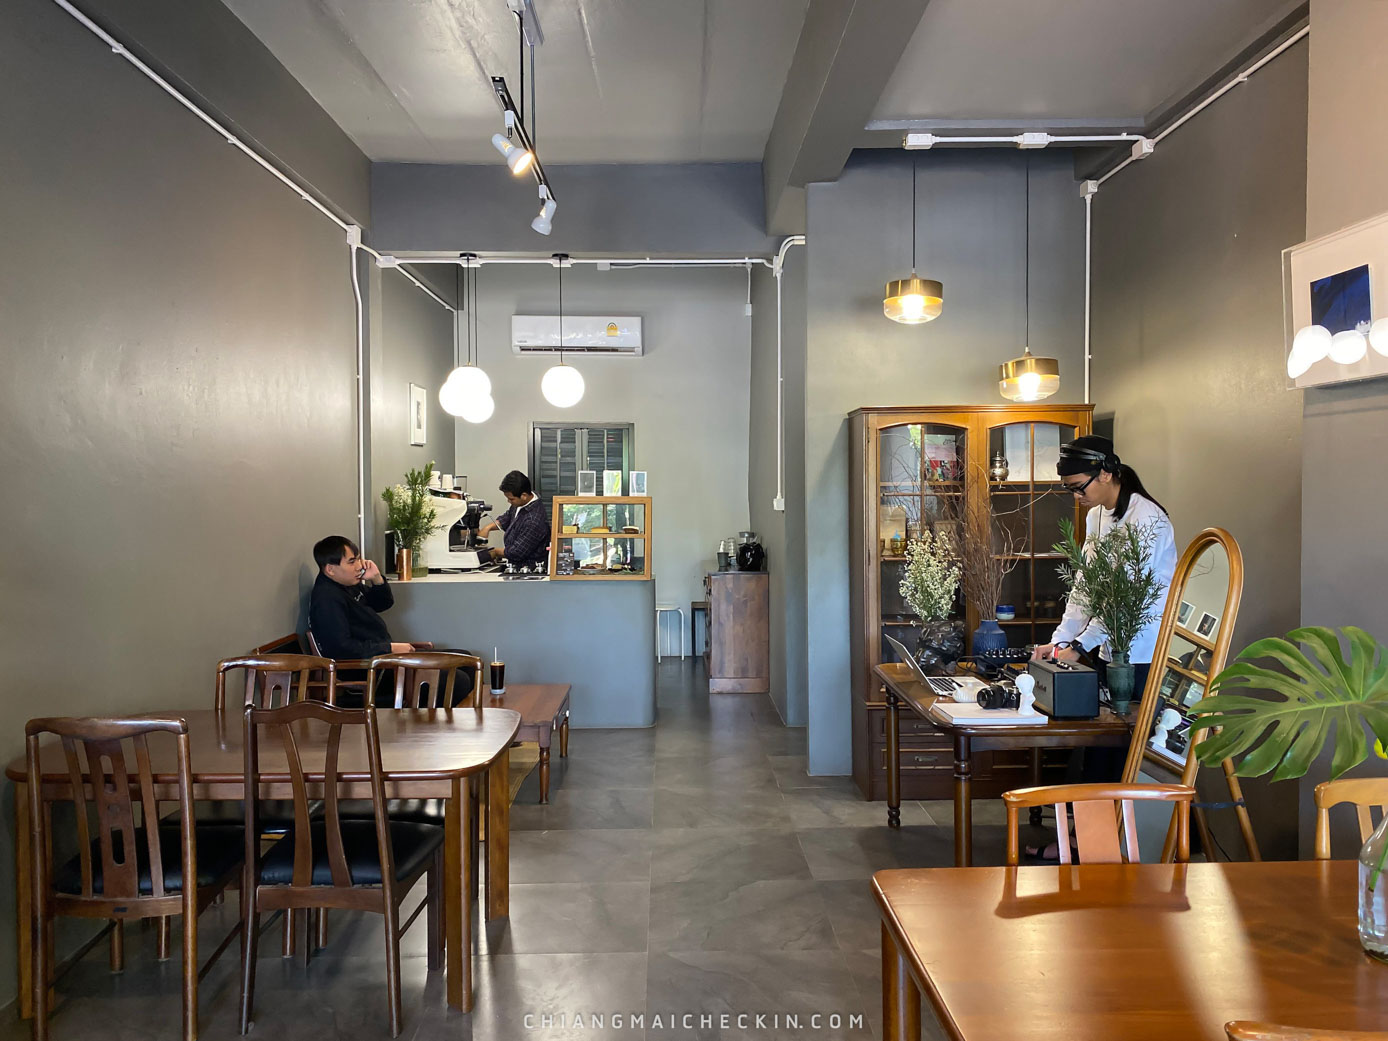 Klom cafe คาเฟ่เชียงใหม่ตกแต่งสดใสน่ารักๆเจ้าของร้านใจดี กาแฟกลมกล่อมราคาไม่แพงต้องห้ามพลาดด